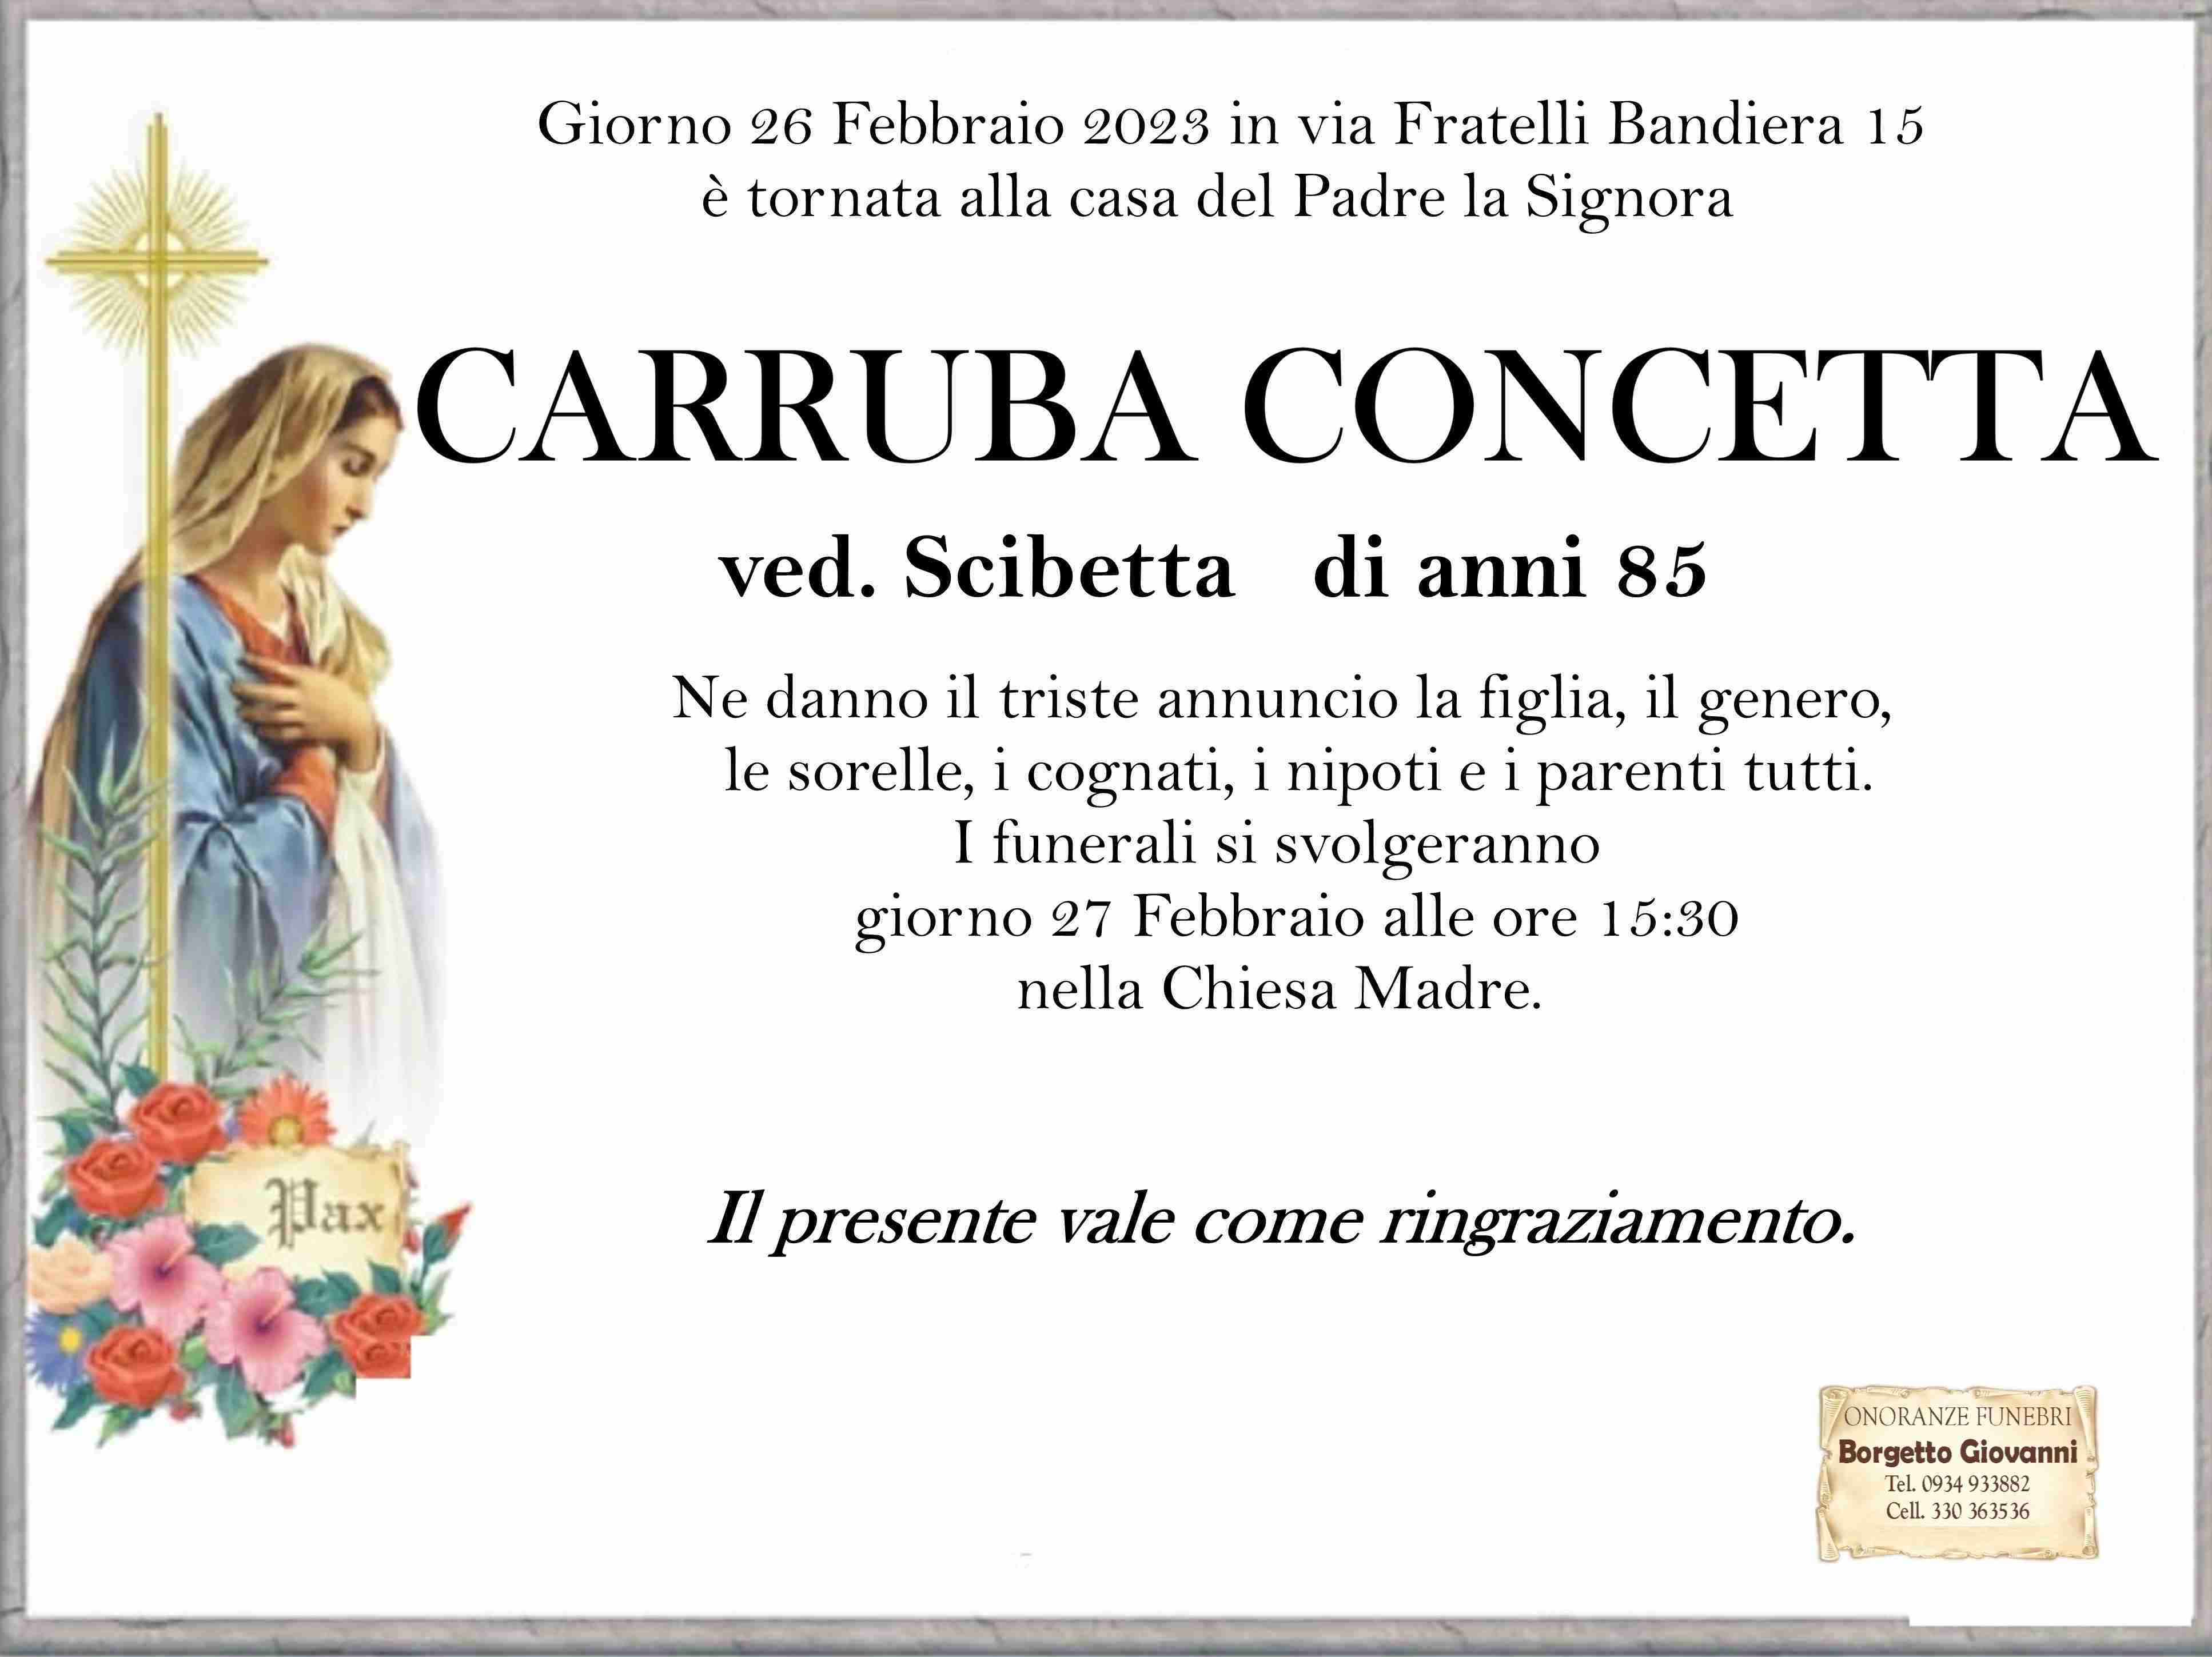 Concetta Carruba